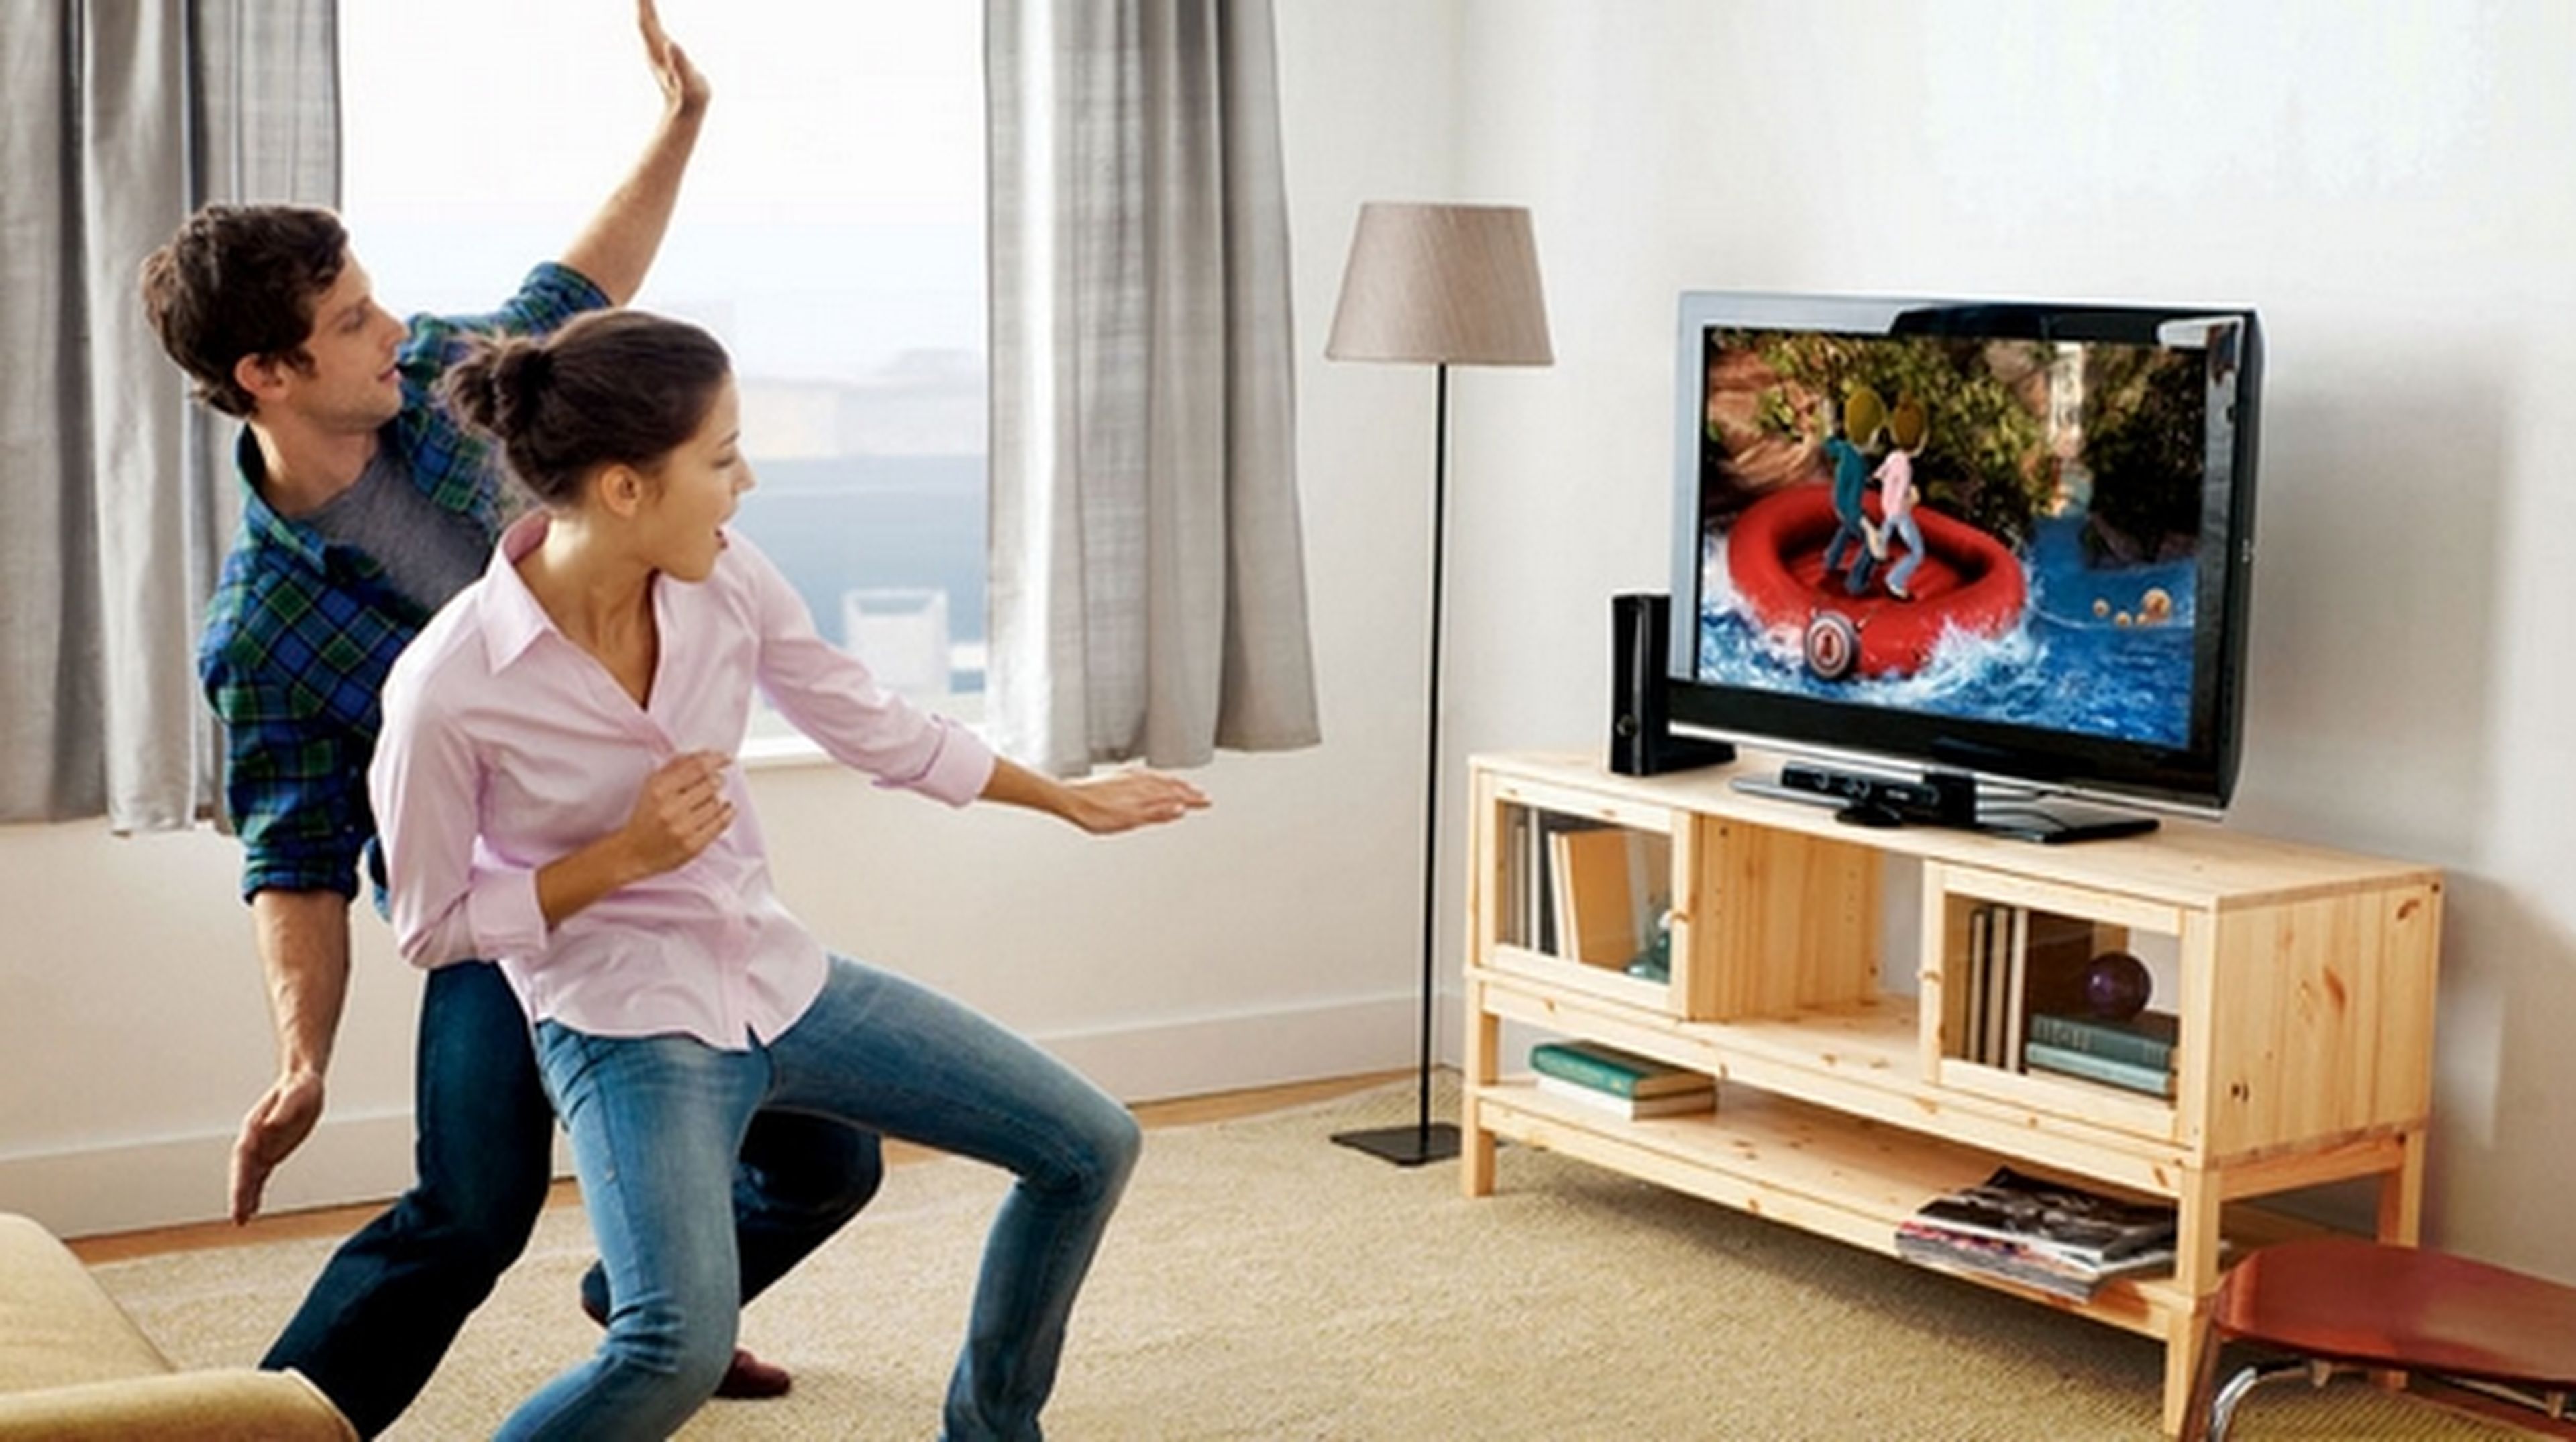 Apple compra PrimeSense, inventores del Kinect de Microsoft